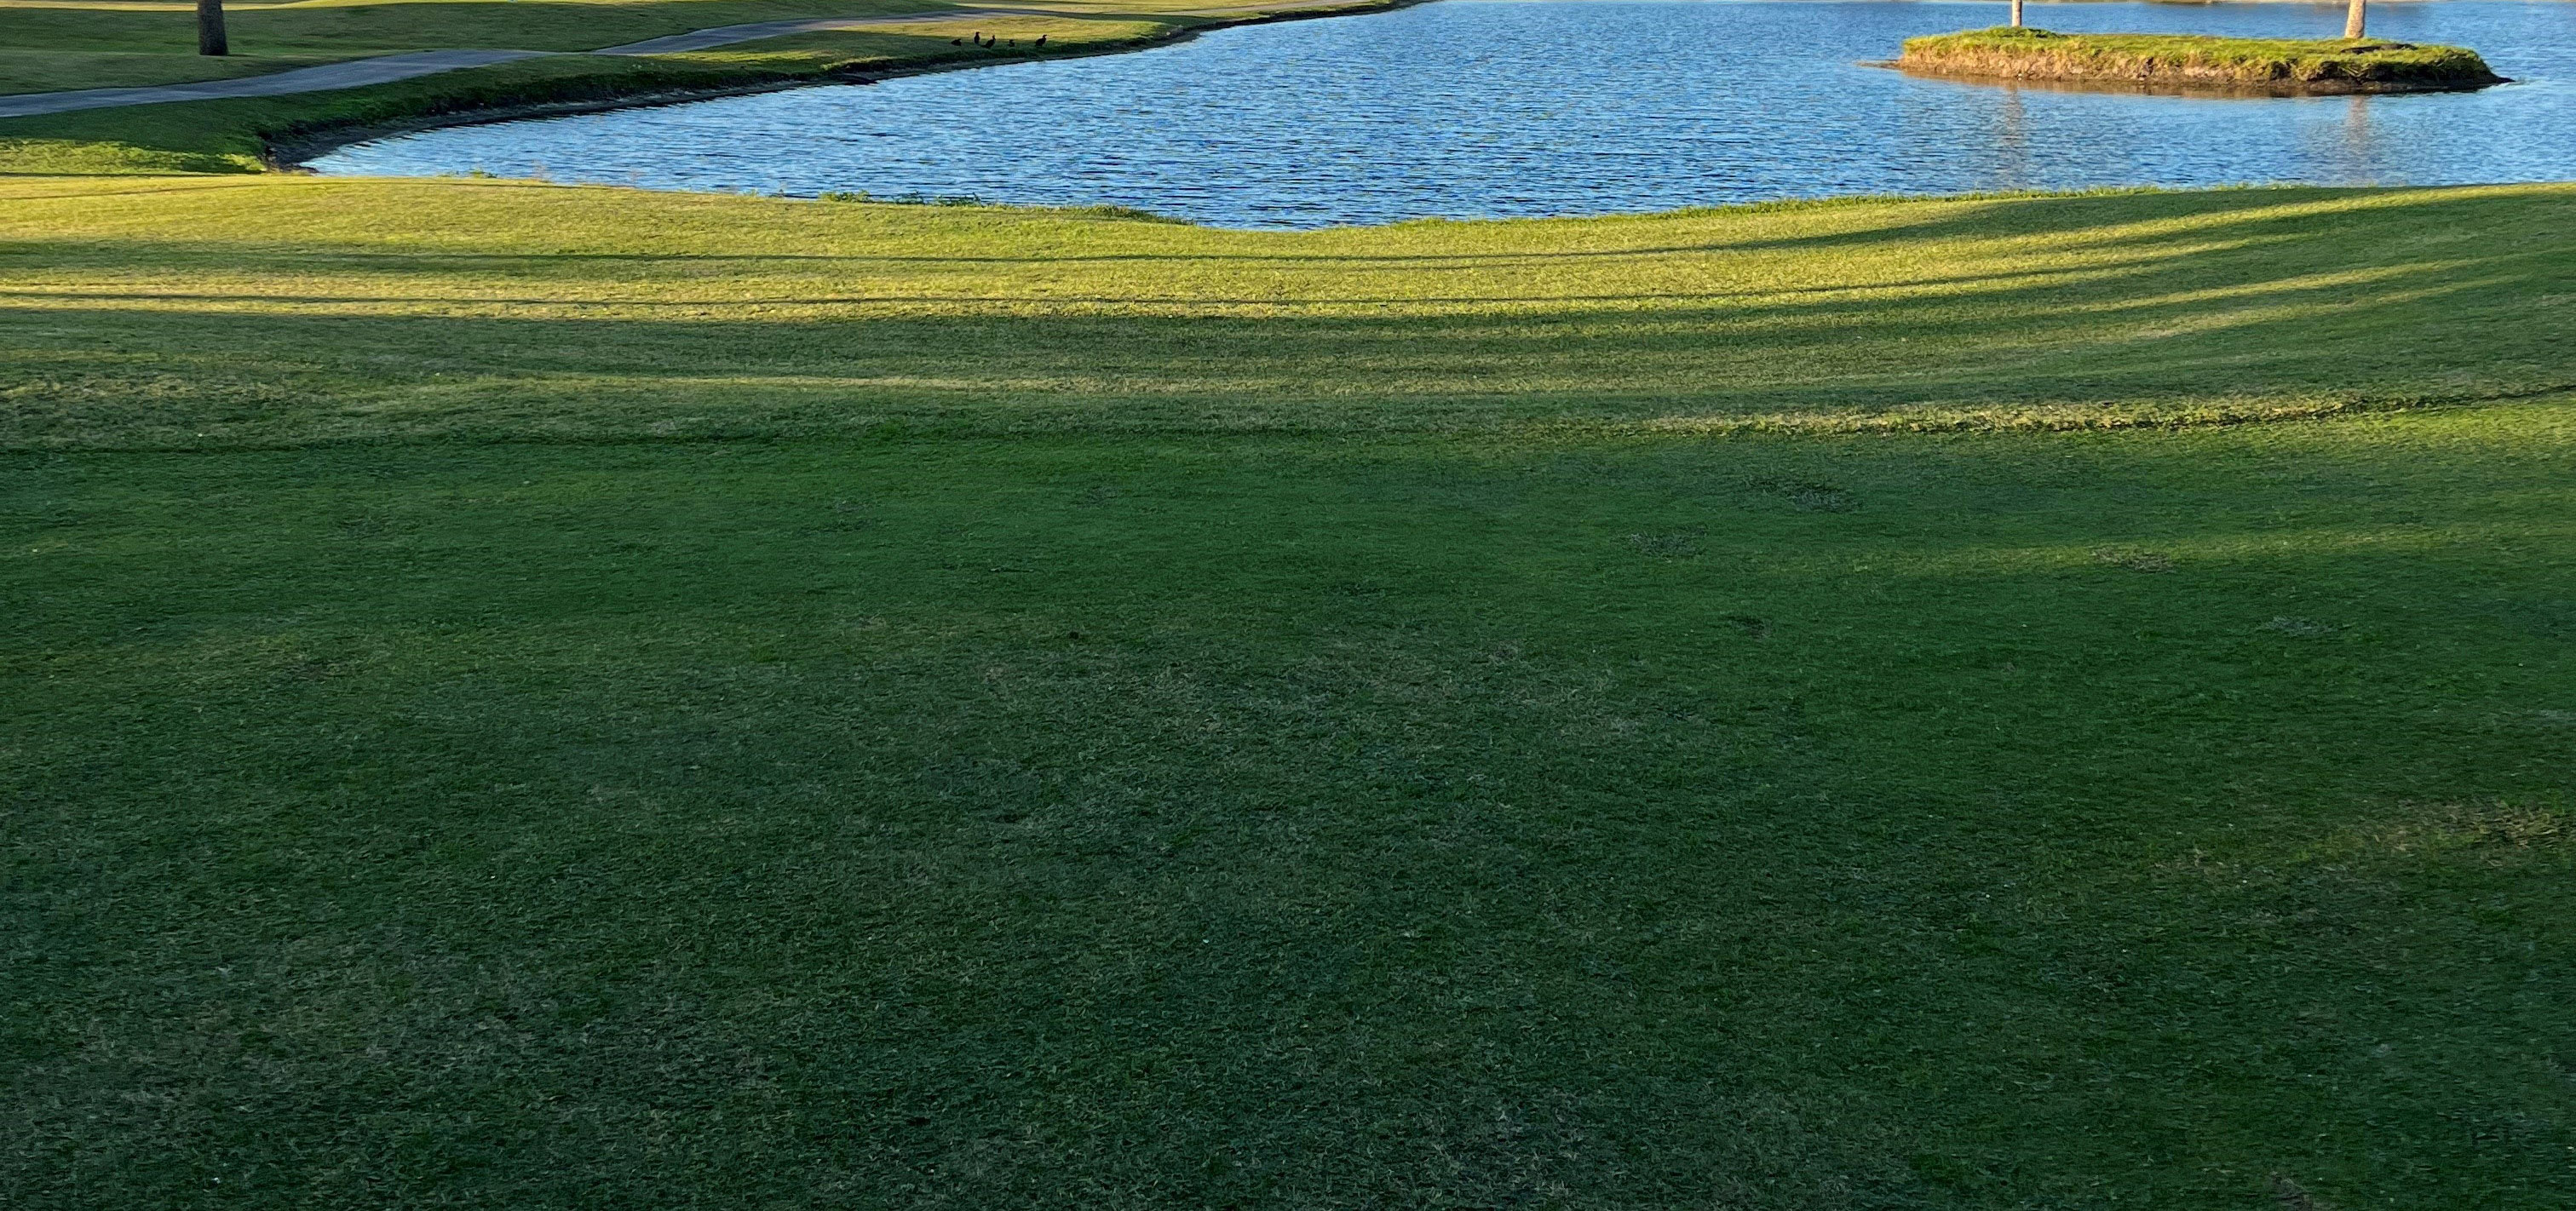 Vista Plantation Golf Club: Golf Club in Vero Beach, FL